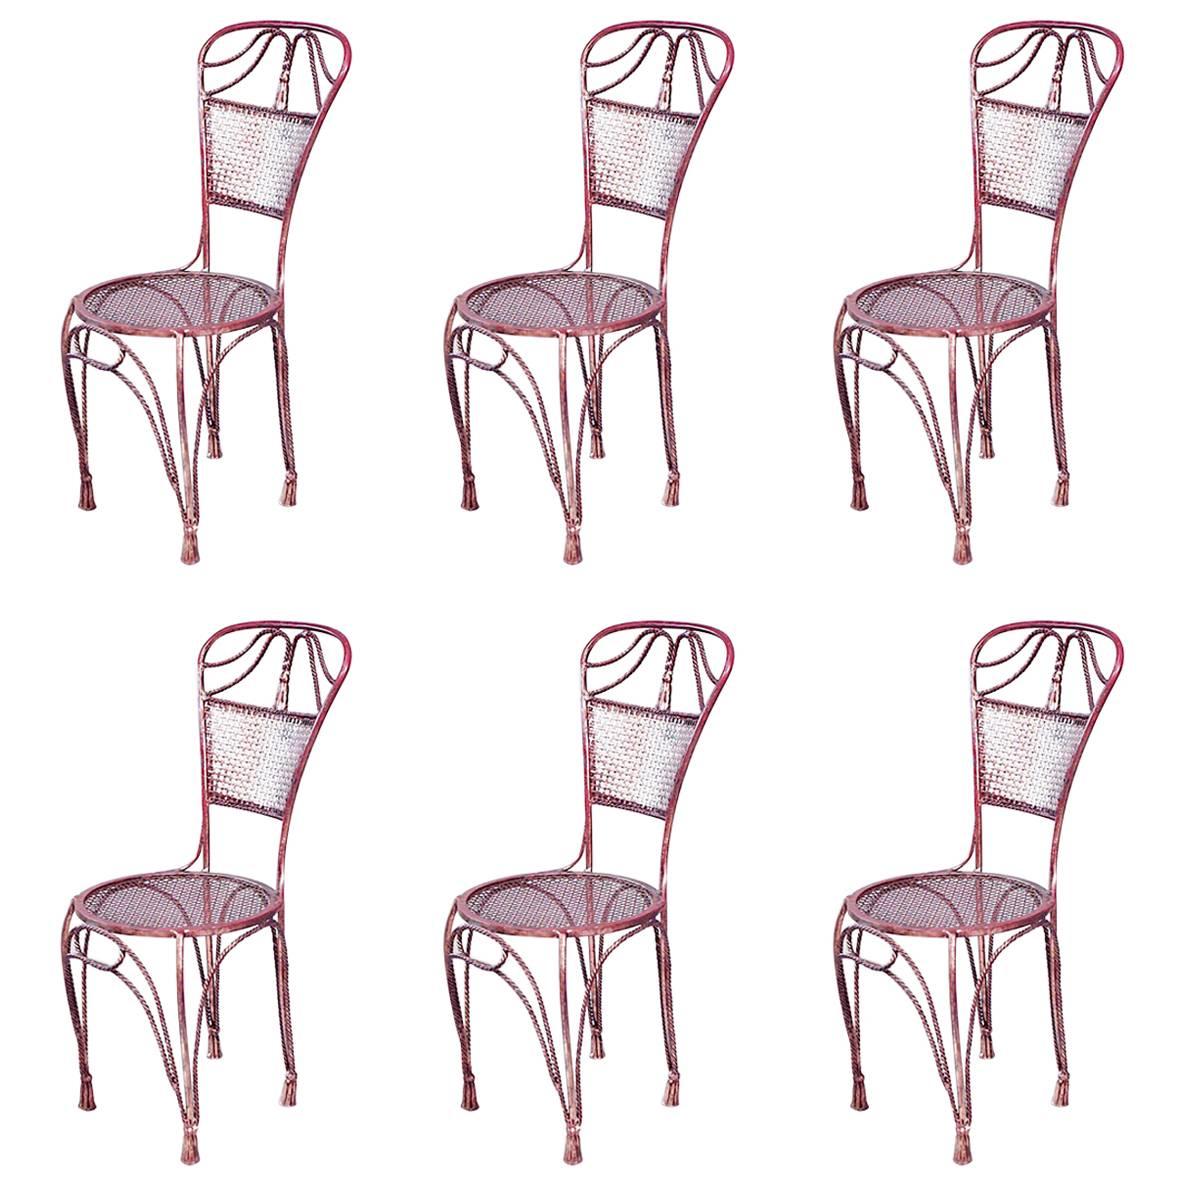 Satz von 6 Beistellstühlen aus vergoldetem Metall mit Seil und Quaste